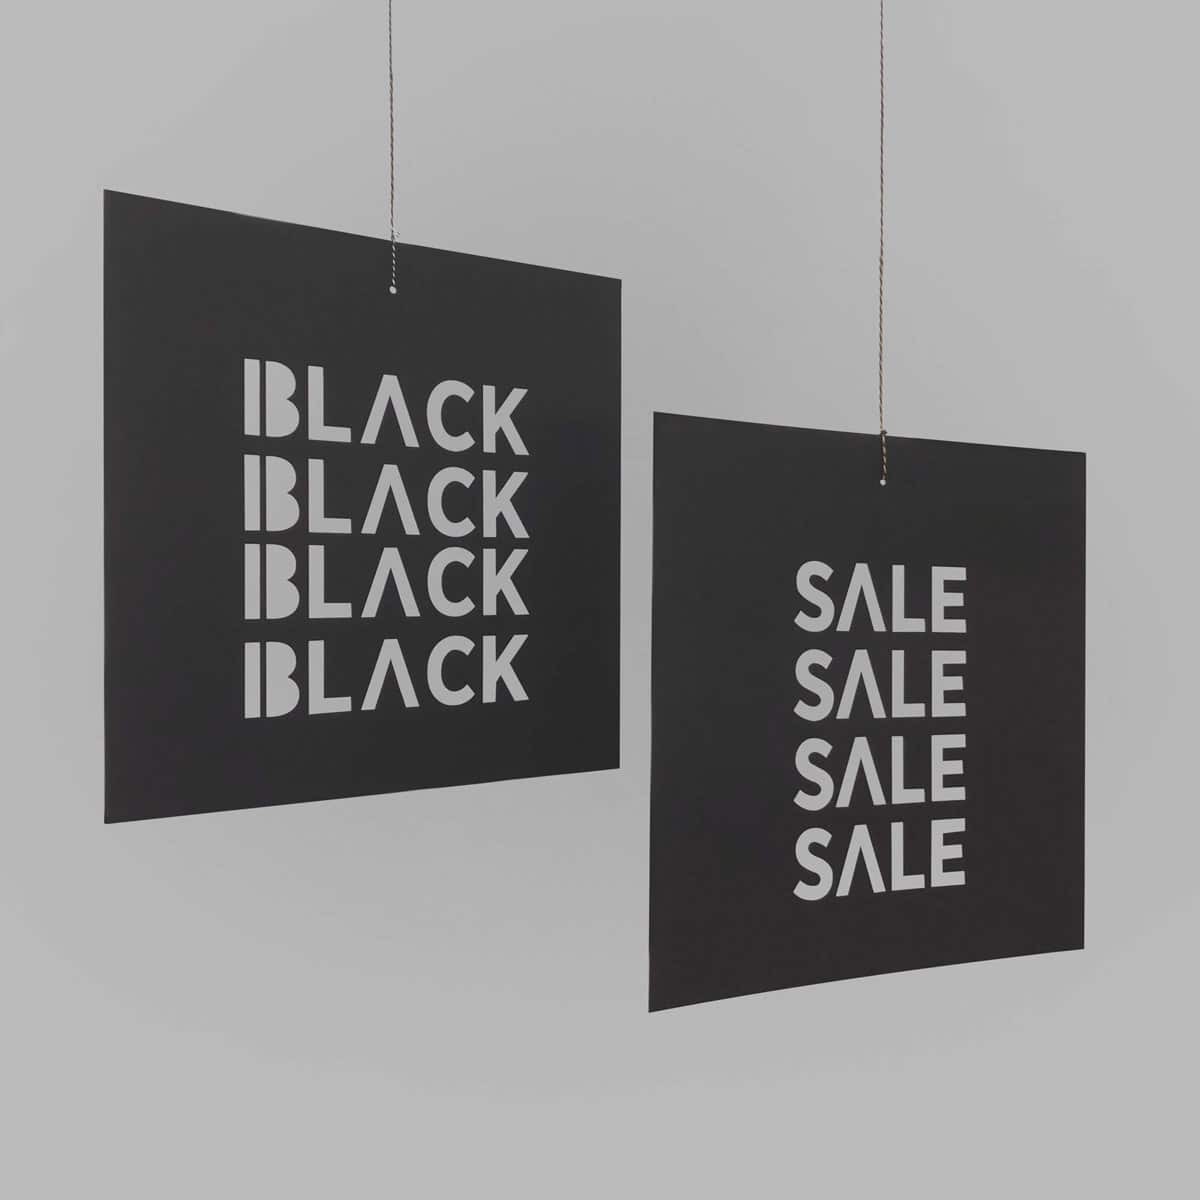 Schilder / Deckenhänger SALE aus KROMA All Black